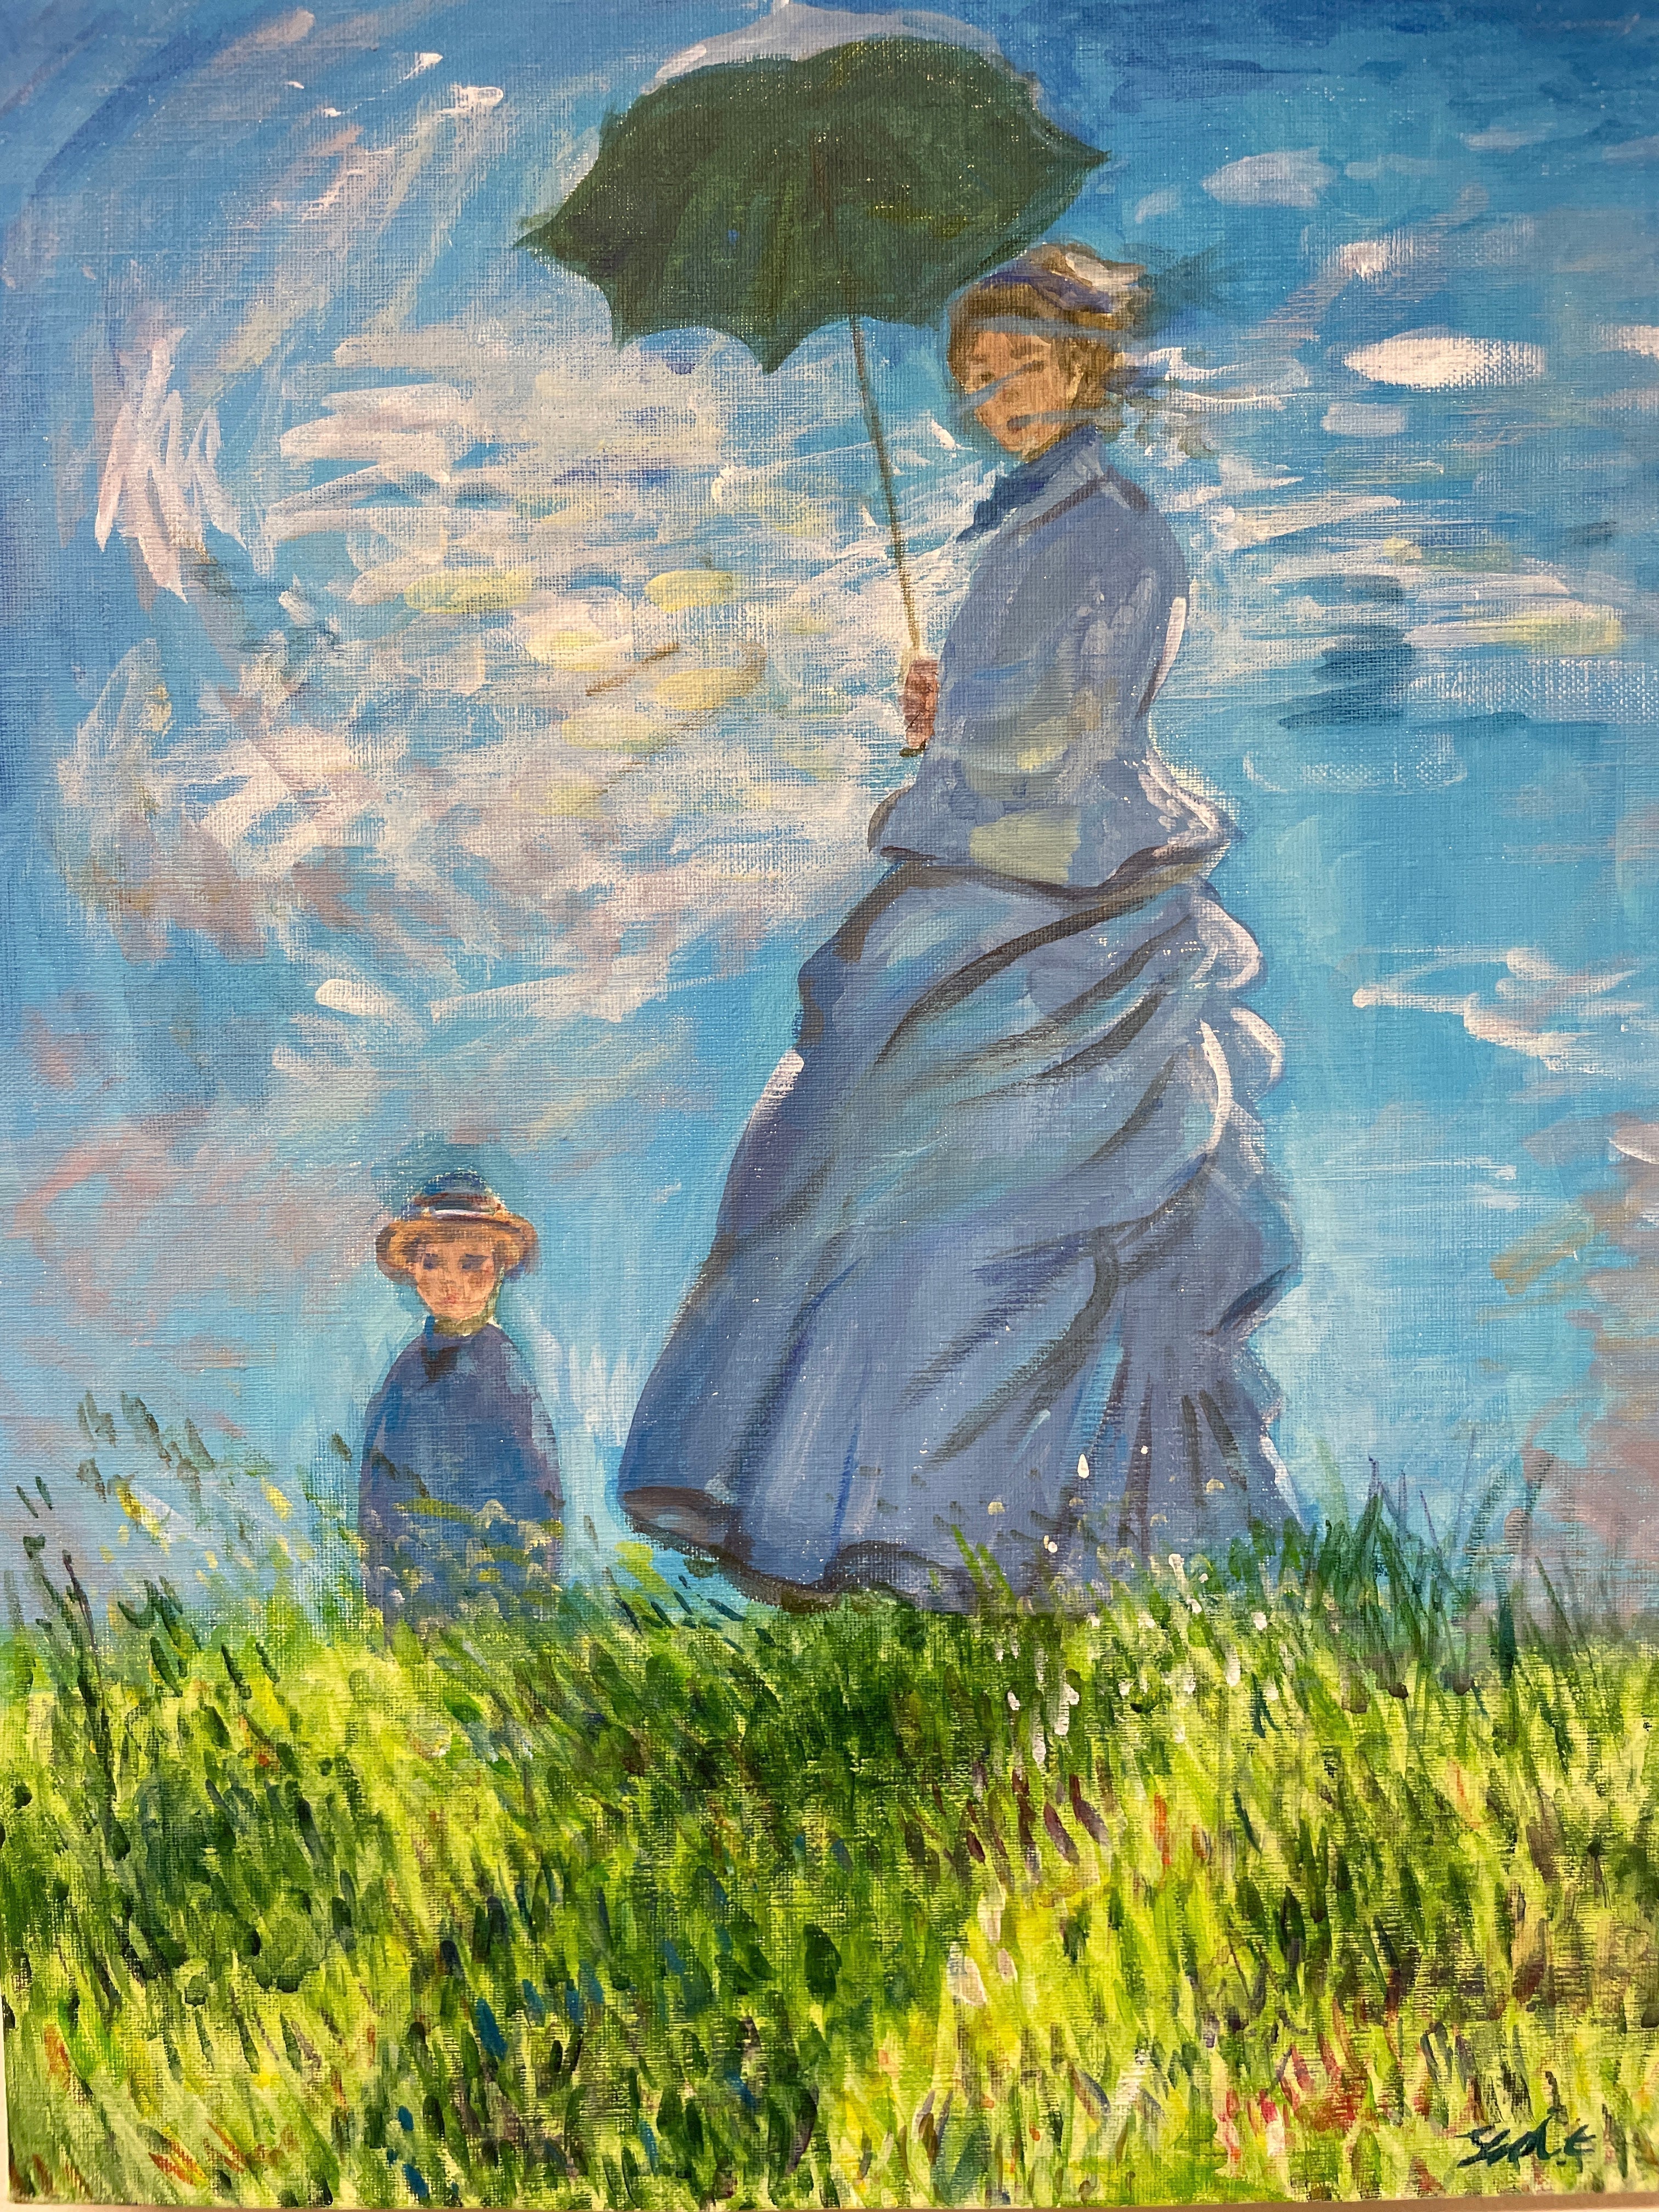 06月23日 (日) 14:00-17:00 | 日本橋 | クロード・モネ | 散歩、日傘をさす女性 (Woman with a Parasol by Claude Monet at Nihon-bashi)